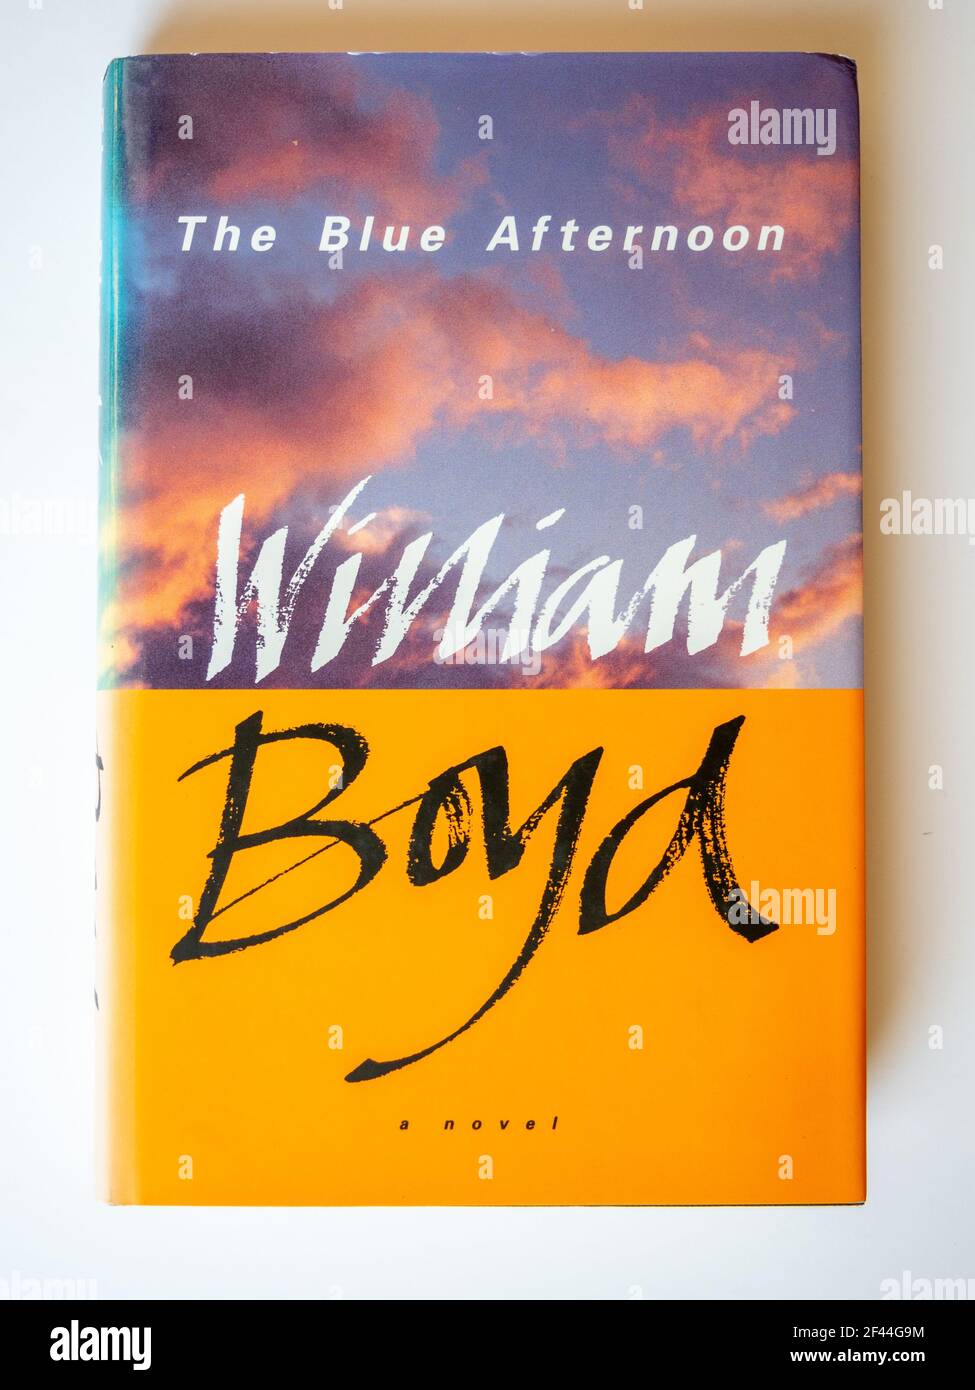 Photo d'un livre de hardback, The Blue Afternoon de William Boyd, publié par Sinclair-Stevenson en 1993. Banque D'Images